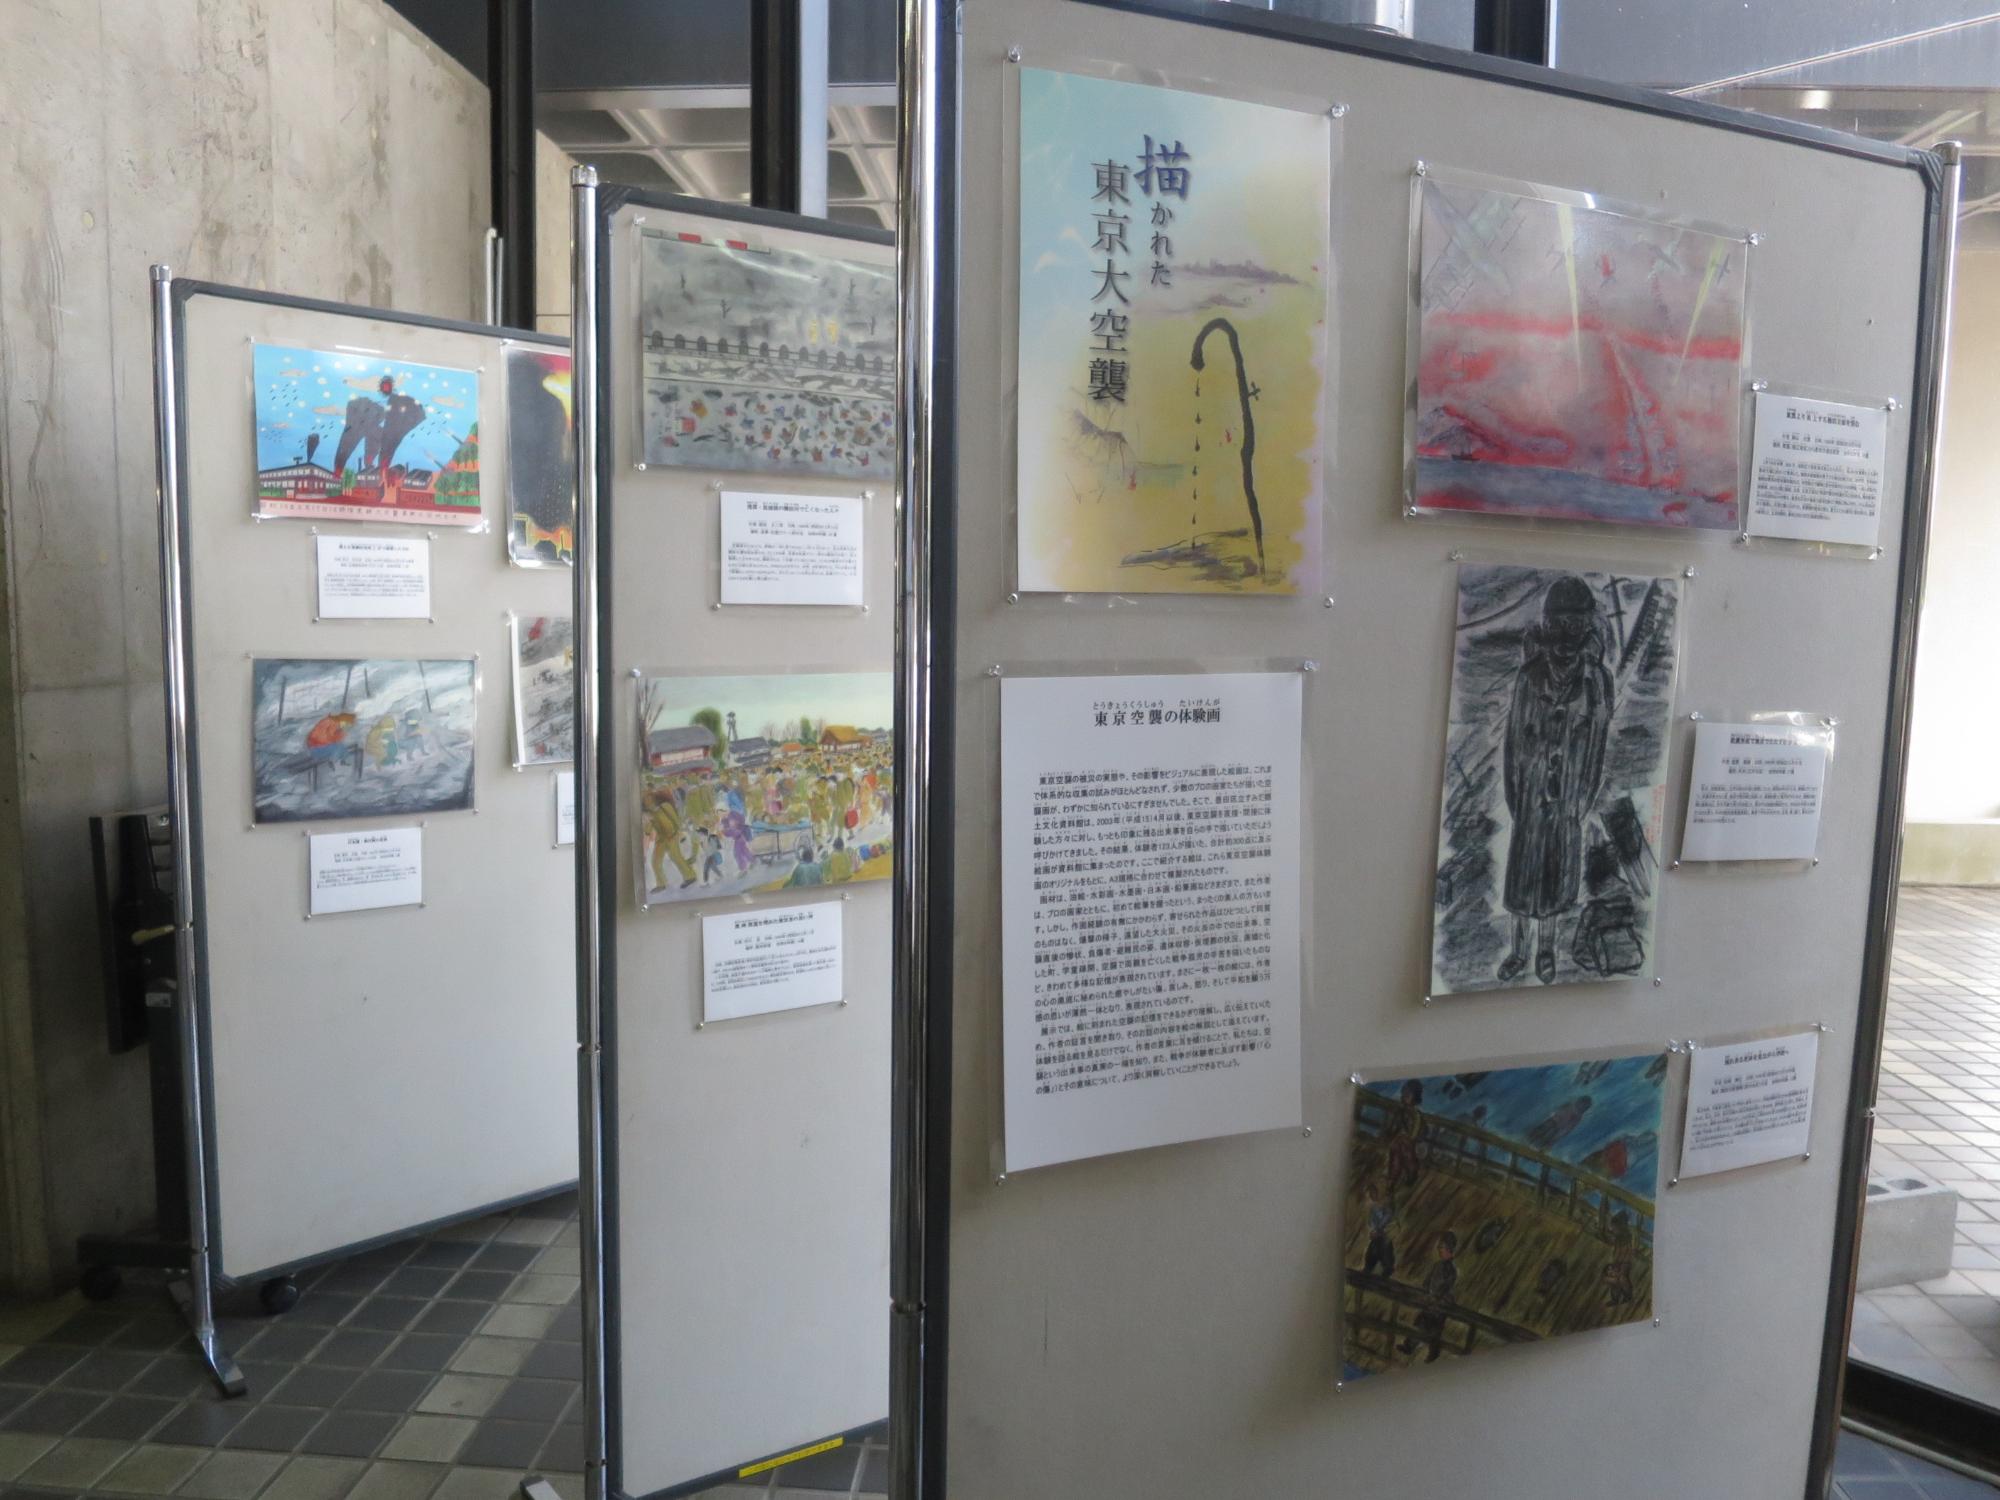 東京大空襲体験画がパネルに貼られ展示されている写真